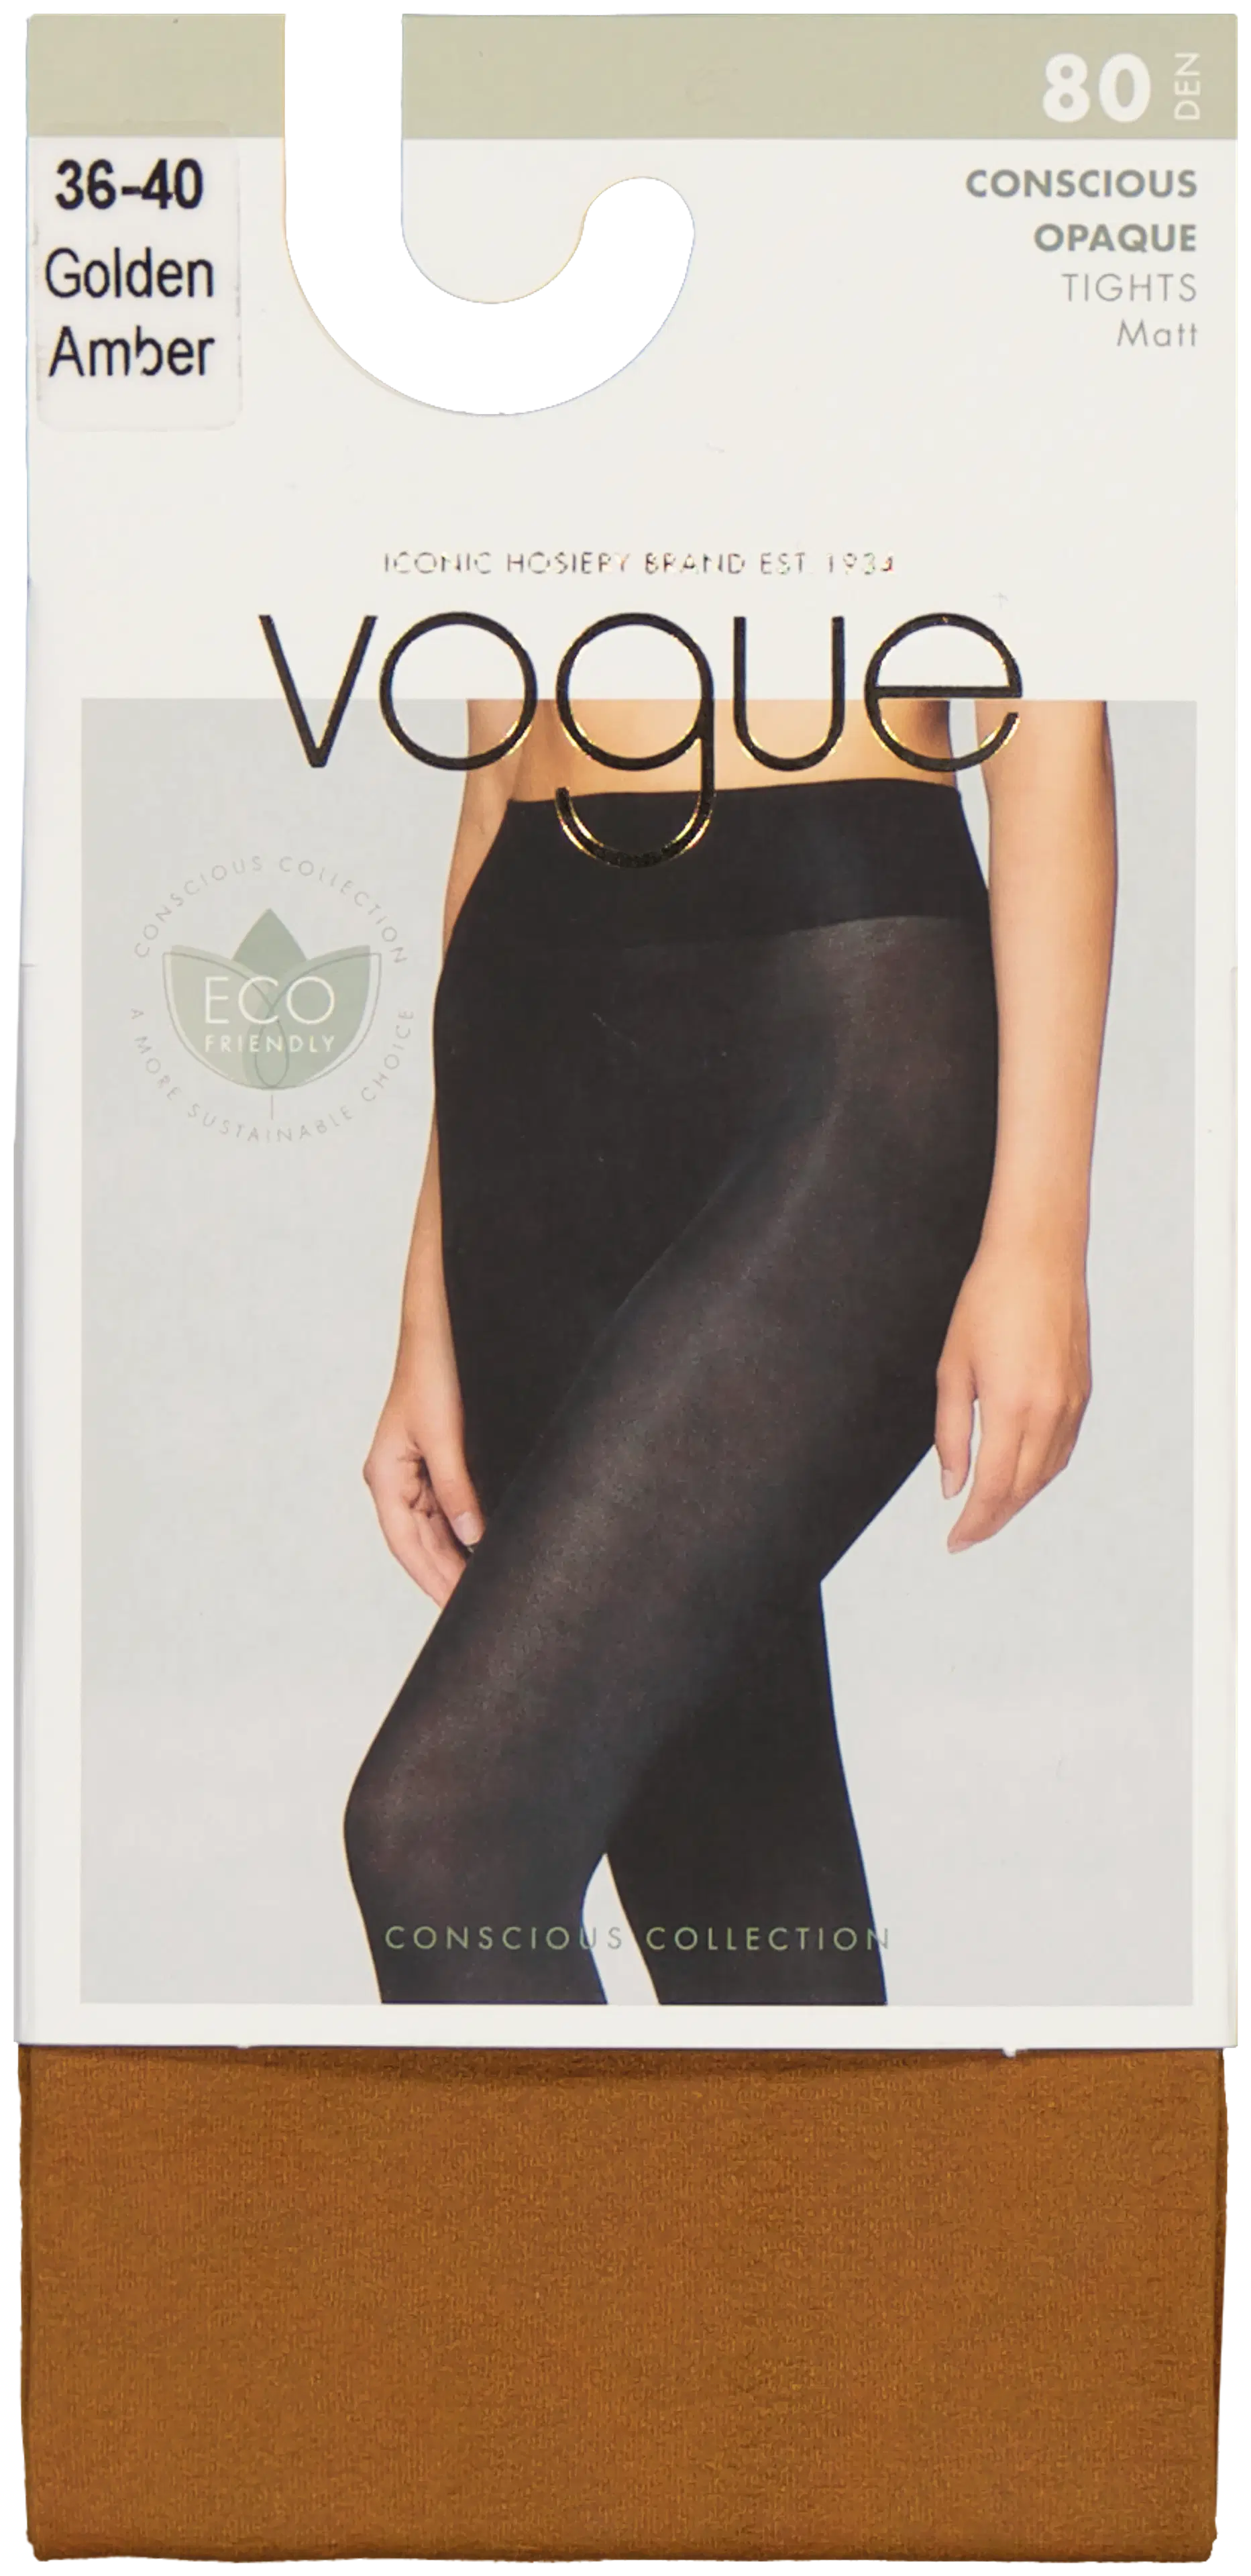 Vogue Conscious Opaque 80 sukkahousut